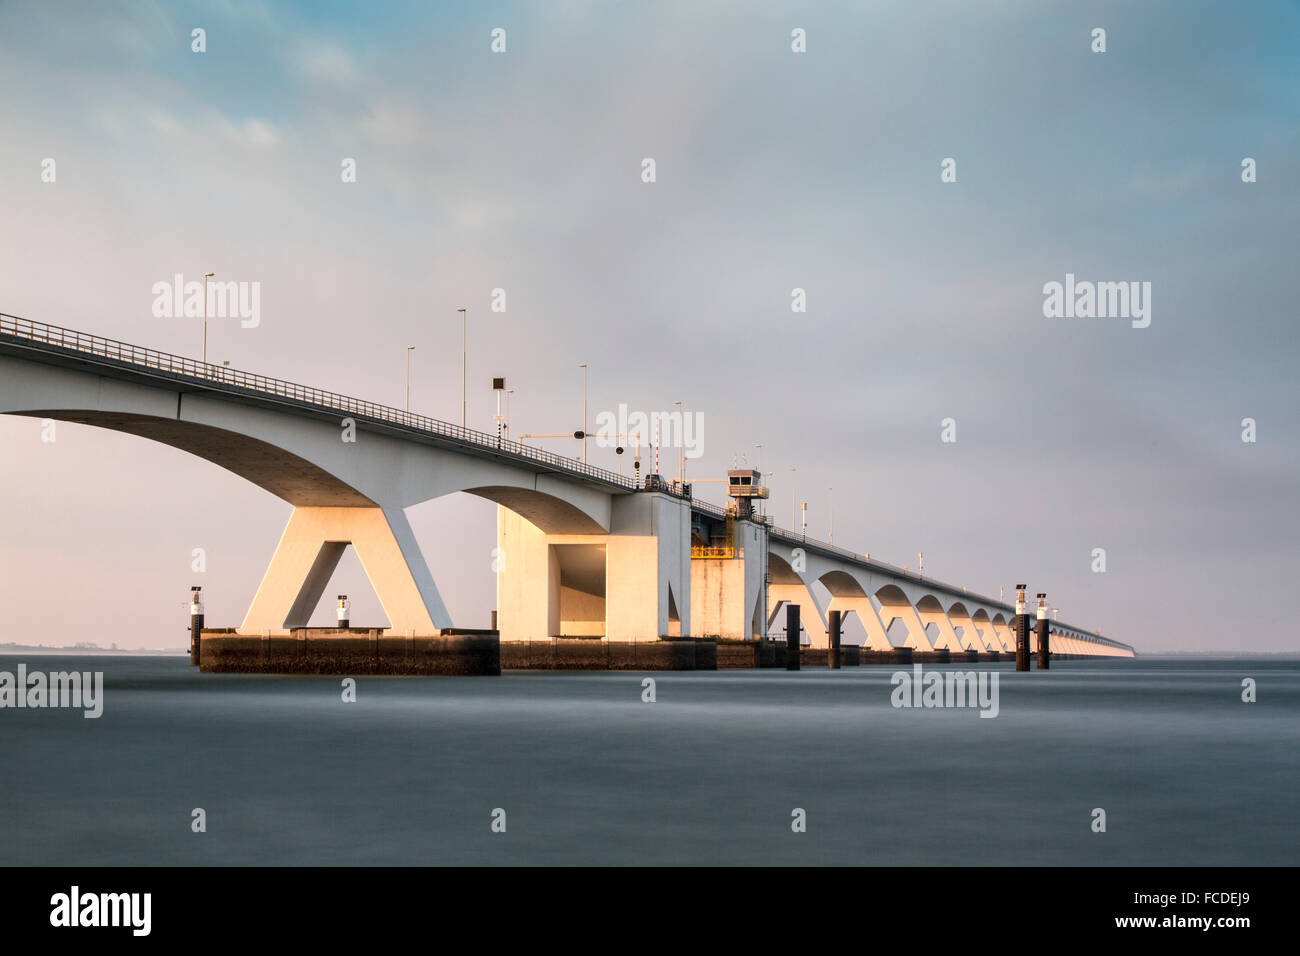 Paesi Bassi, Zierikzee, Zeeland Bridge. Oosterschelde estuario. Schouwen-Duiveland e Noord-Beveland. Esposizione lunga Foto Stock